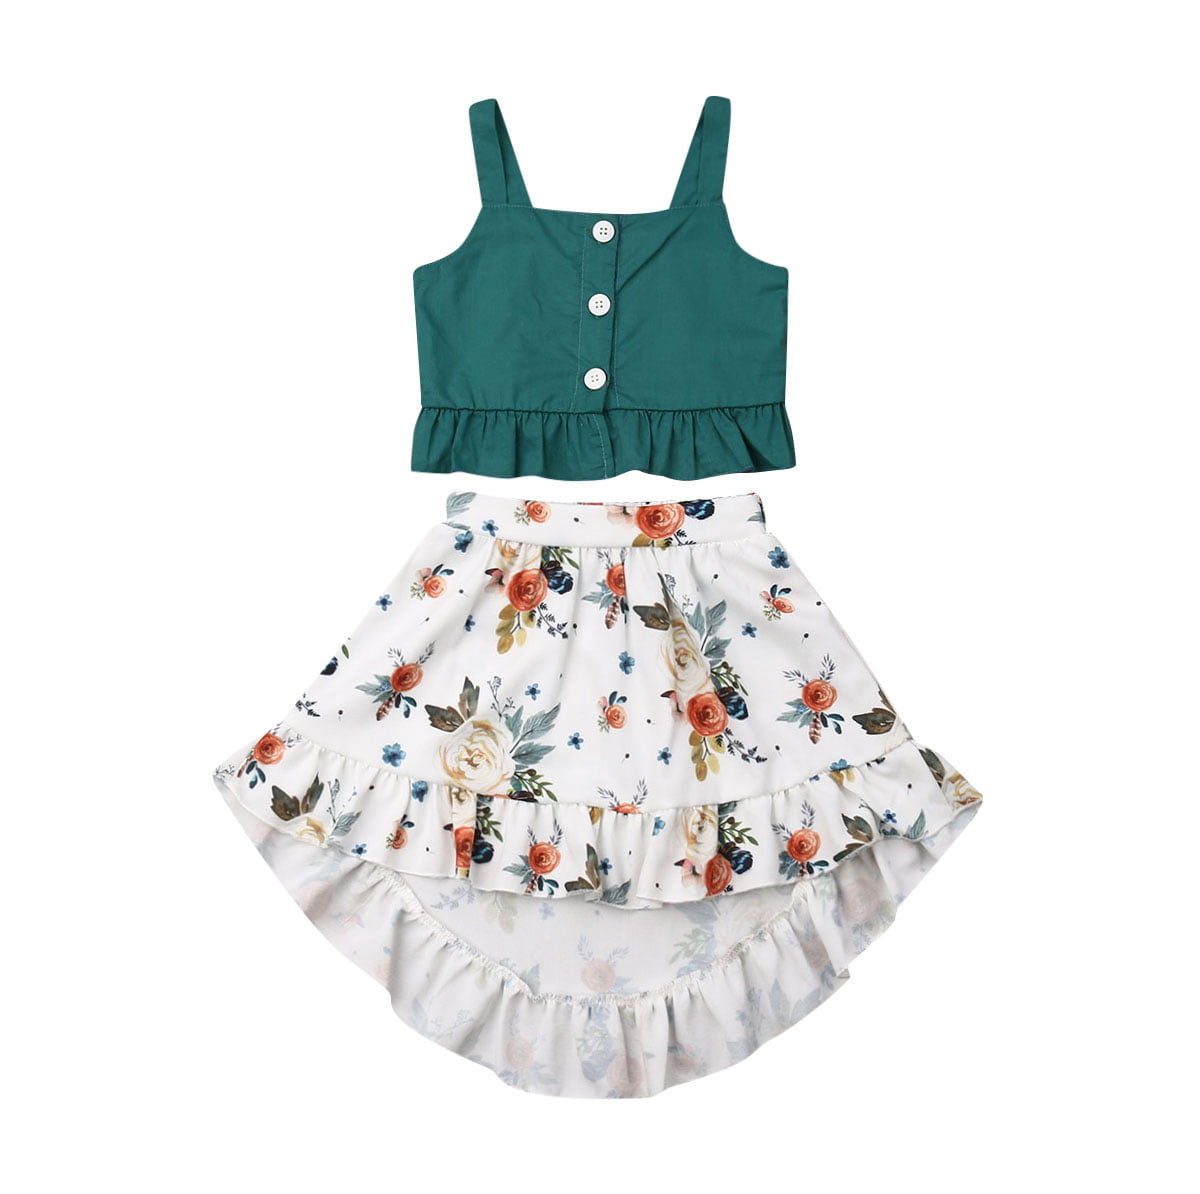 2pcs Newborn Kids Baby Girls Outfits T-shirt Tops+Sequin Tutu Skirt Dress Set 